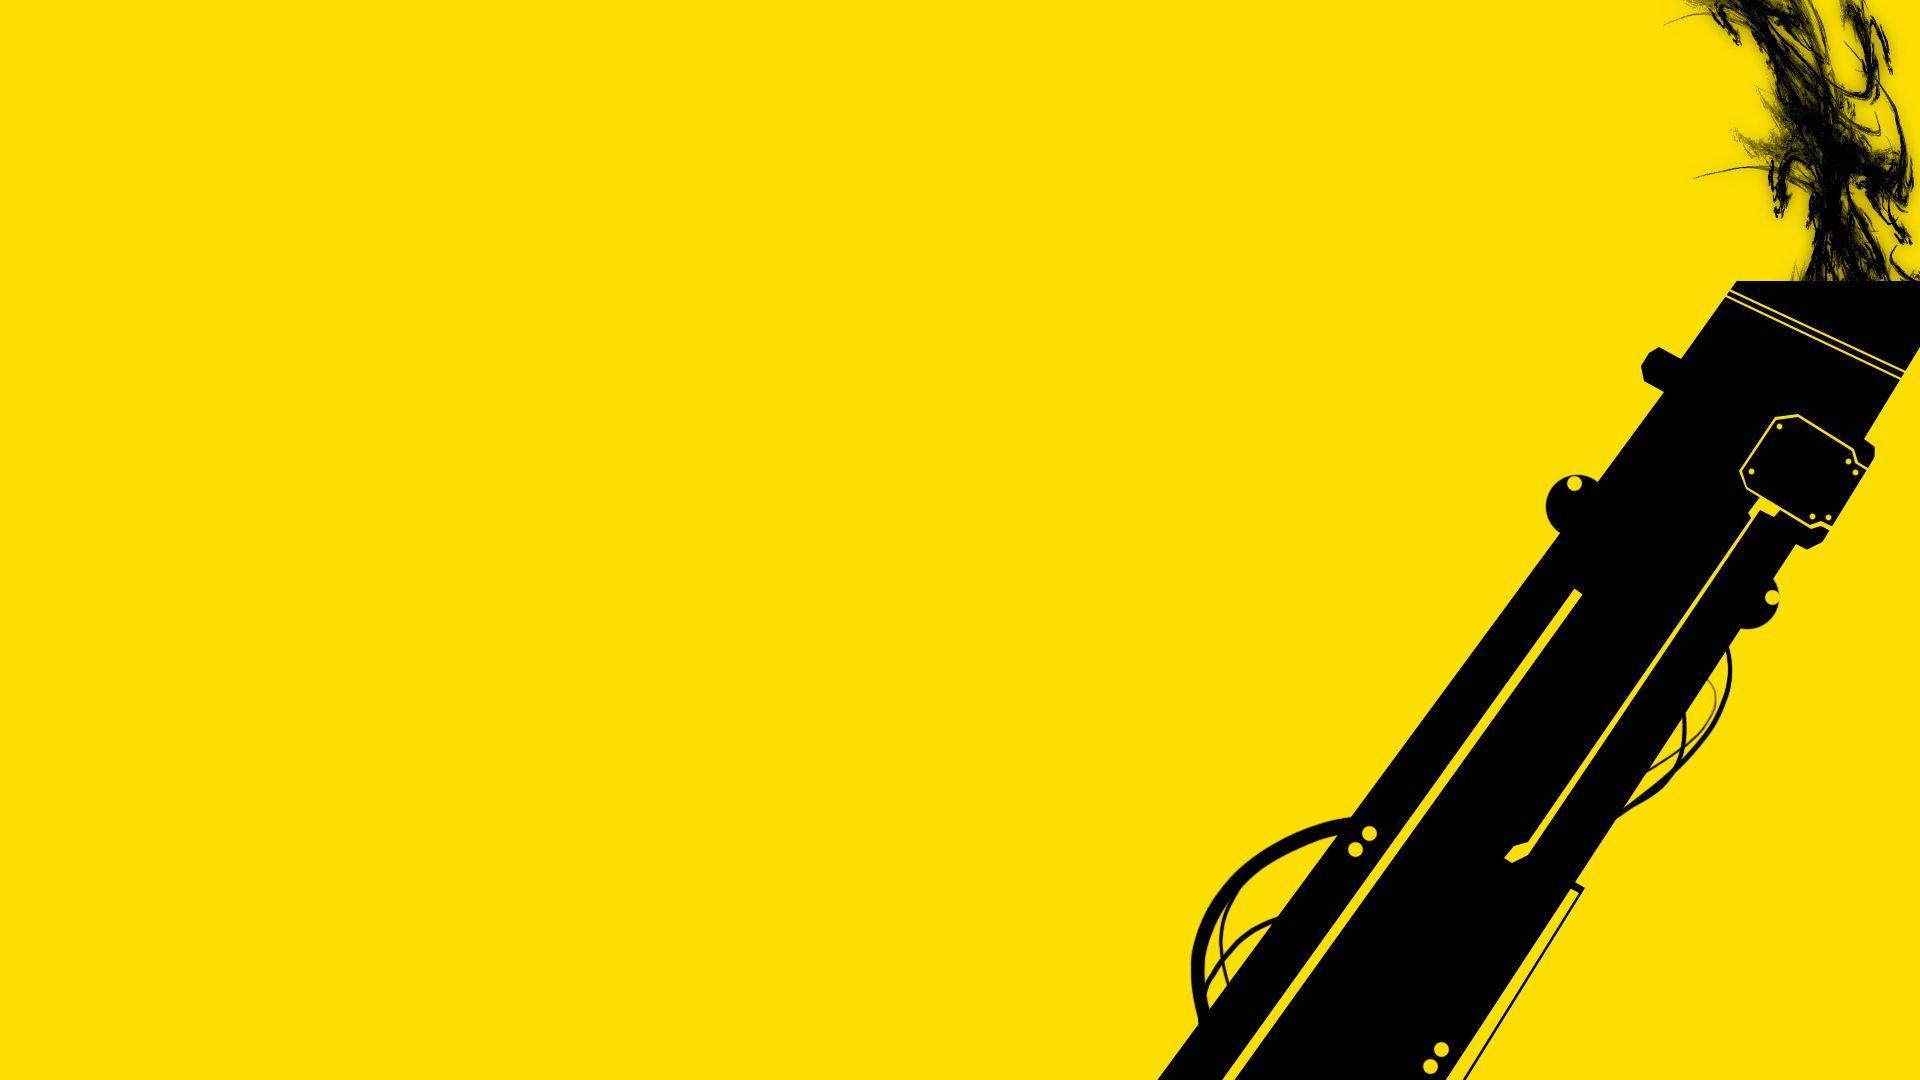 gun, yellow, smoke, black, background, widescreen, generalbeaner